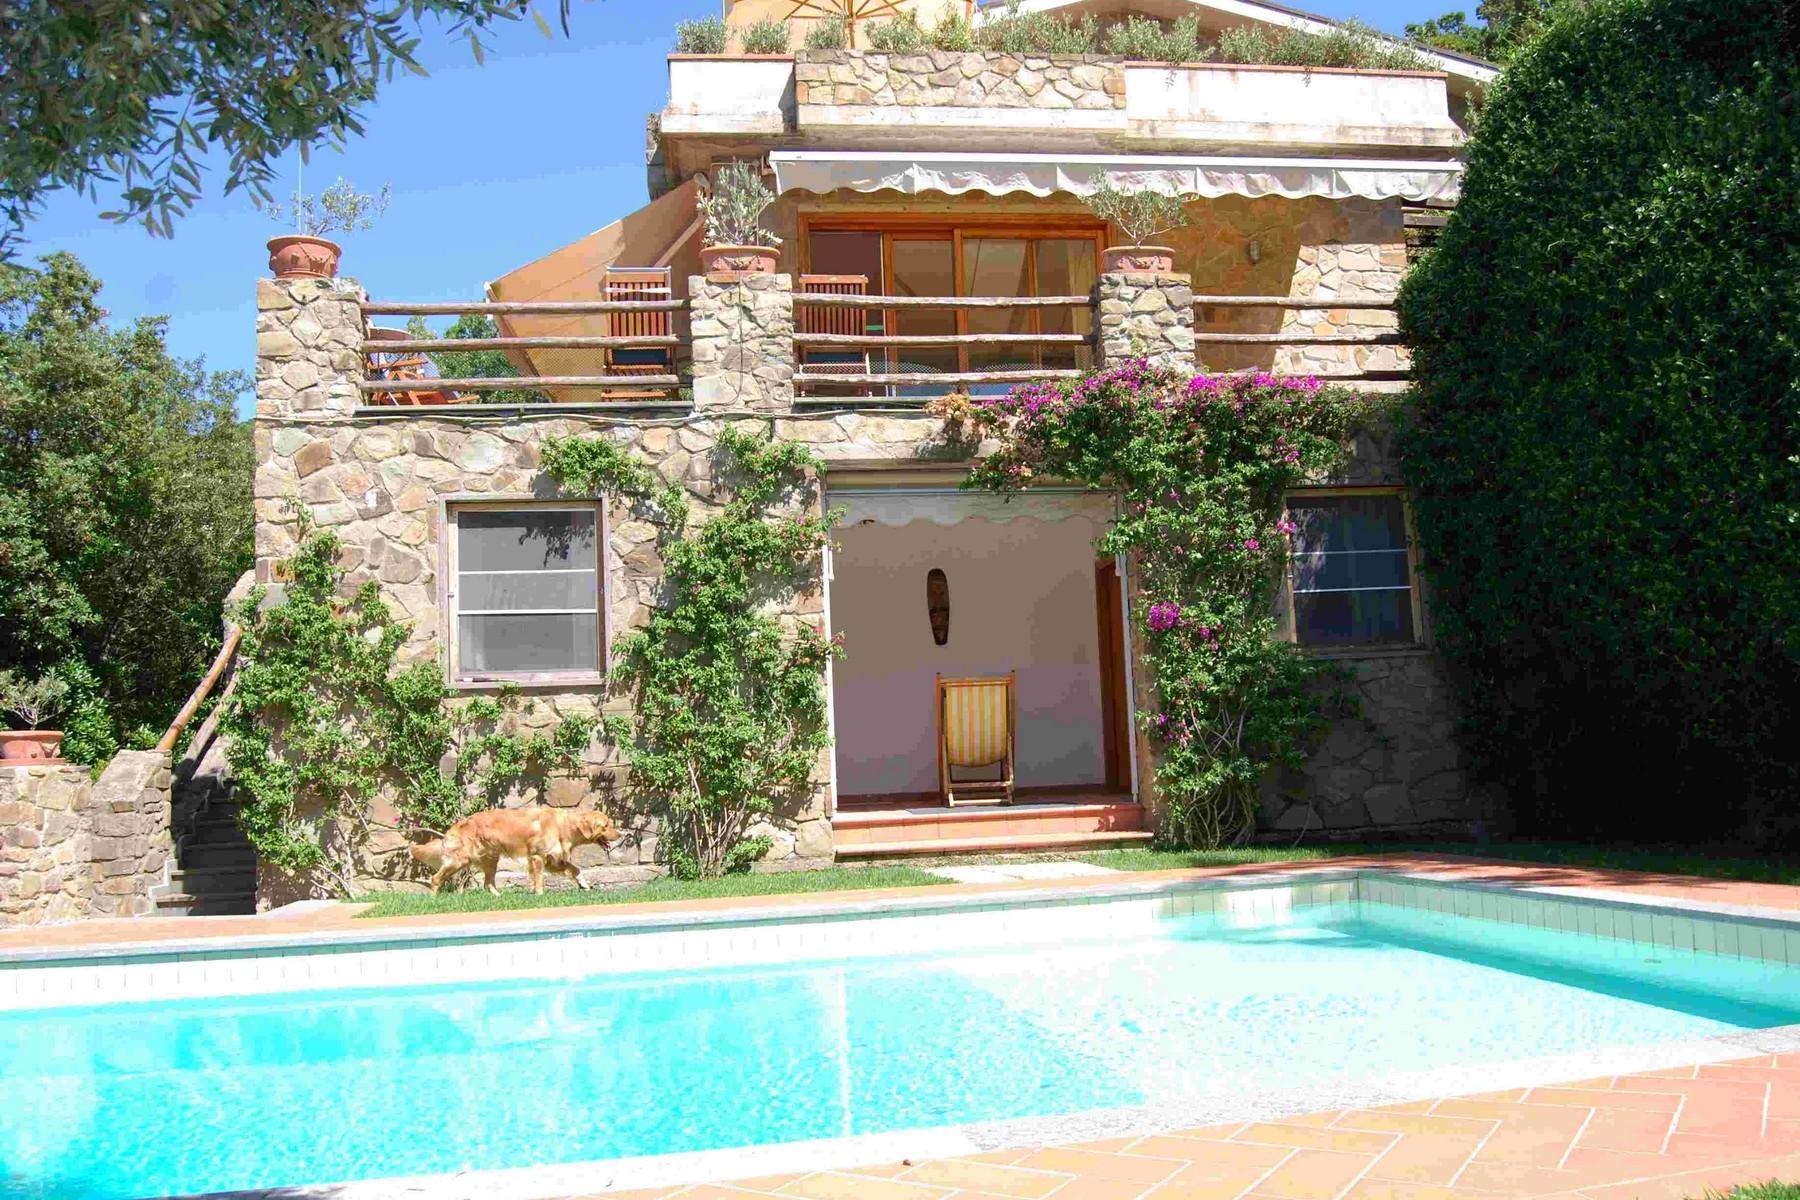 Villa moderna con piscina e giardino mediterraneo - 7